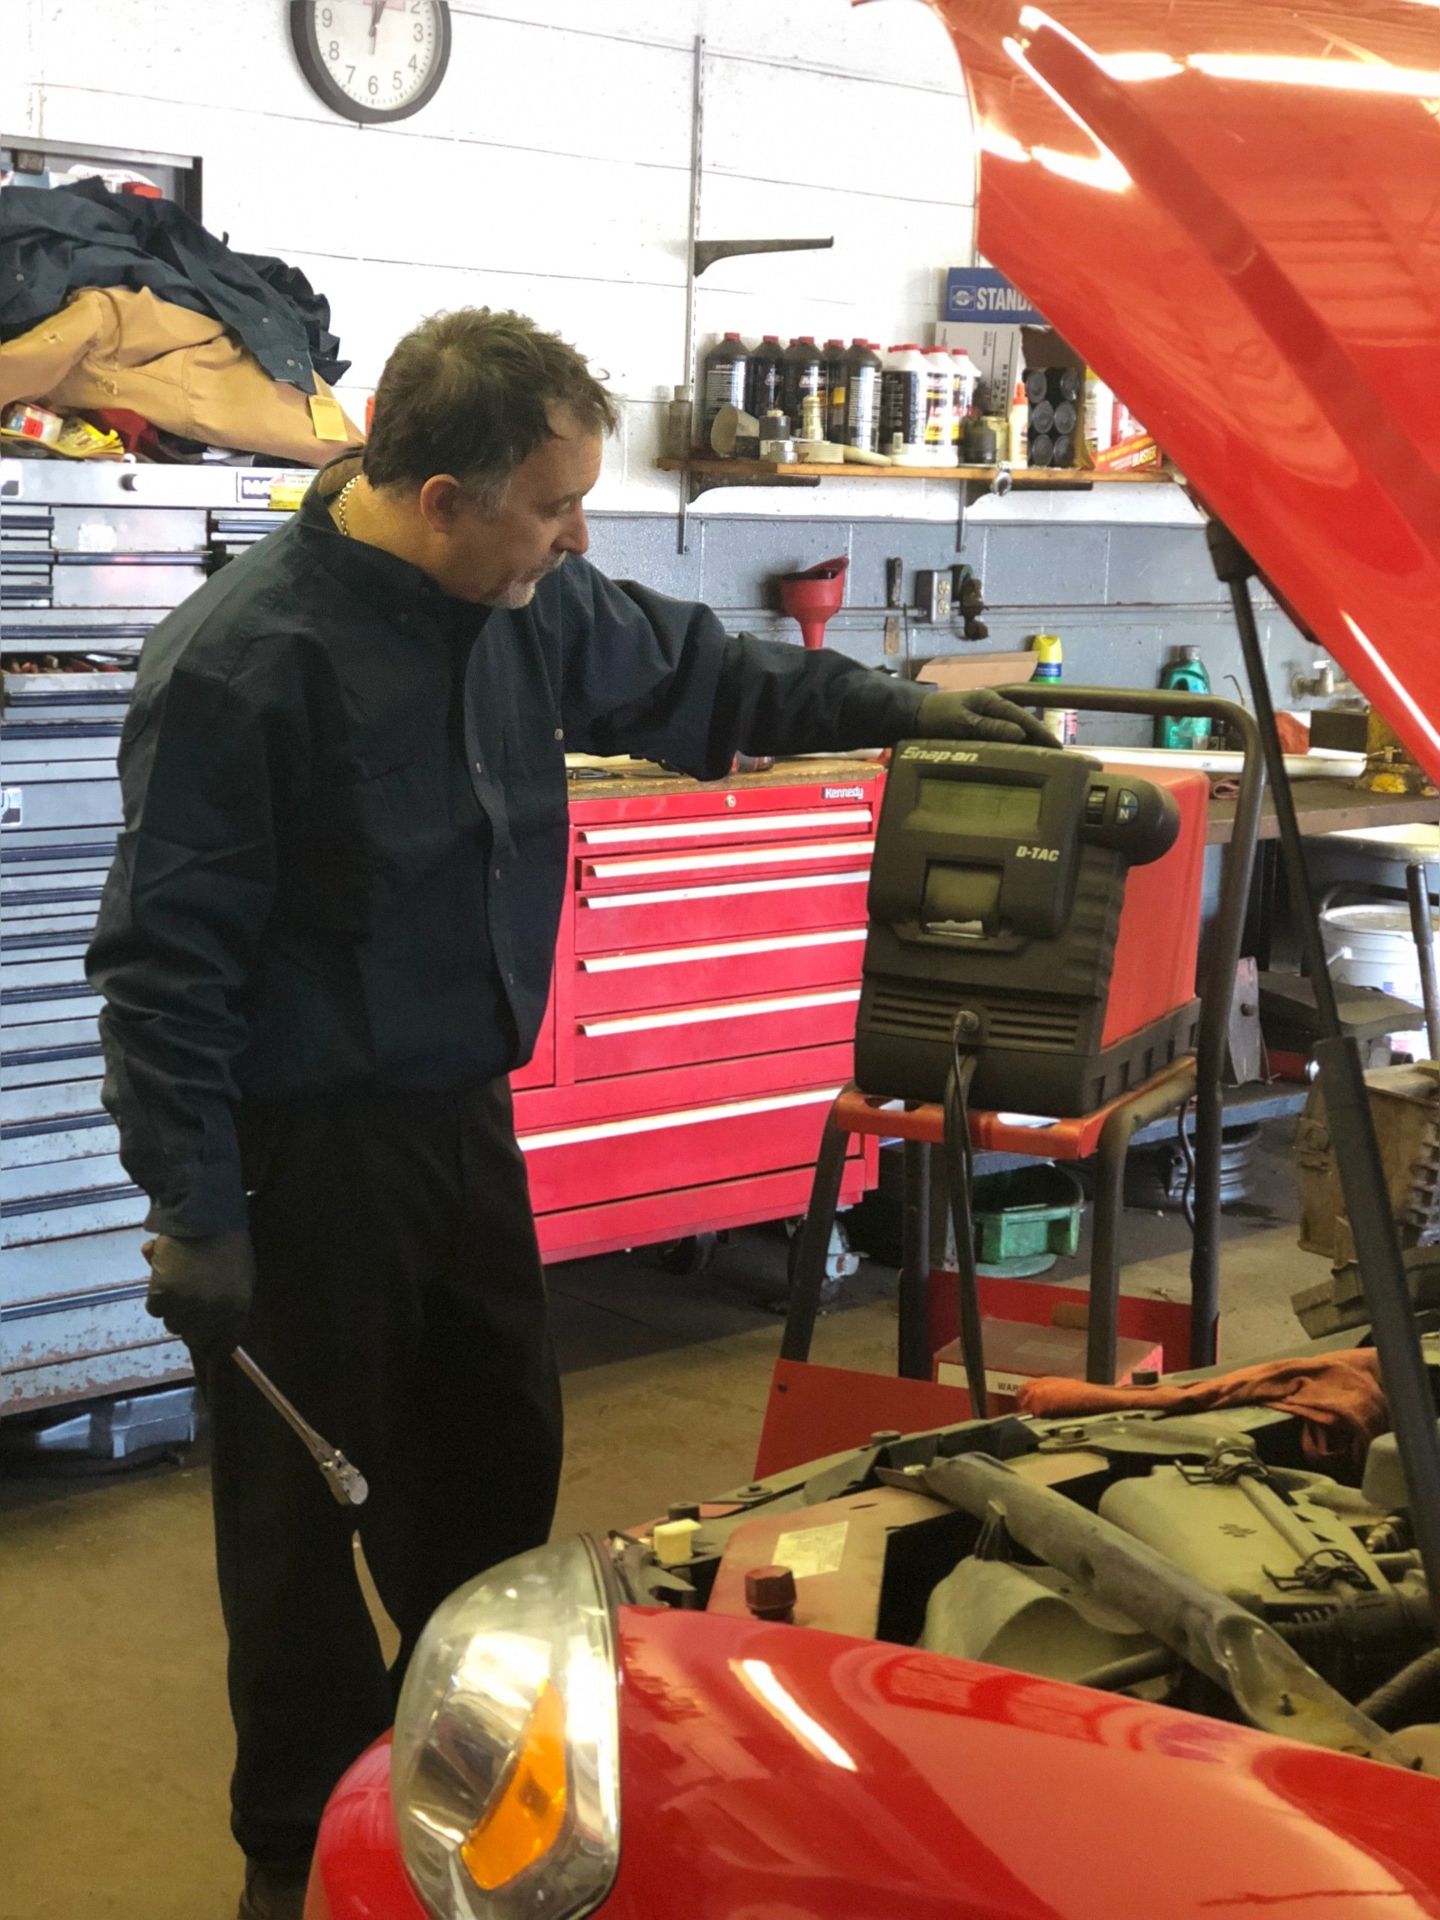 Engine Diagnostics—Mechanic checking transmission of a car in Fraser, MI